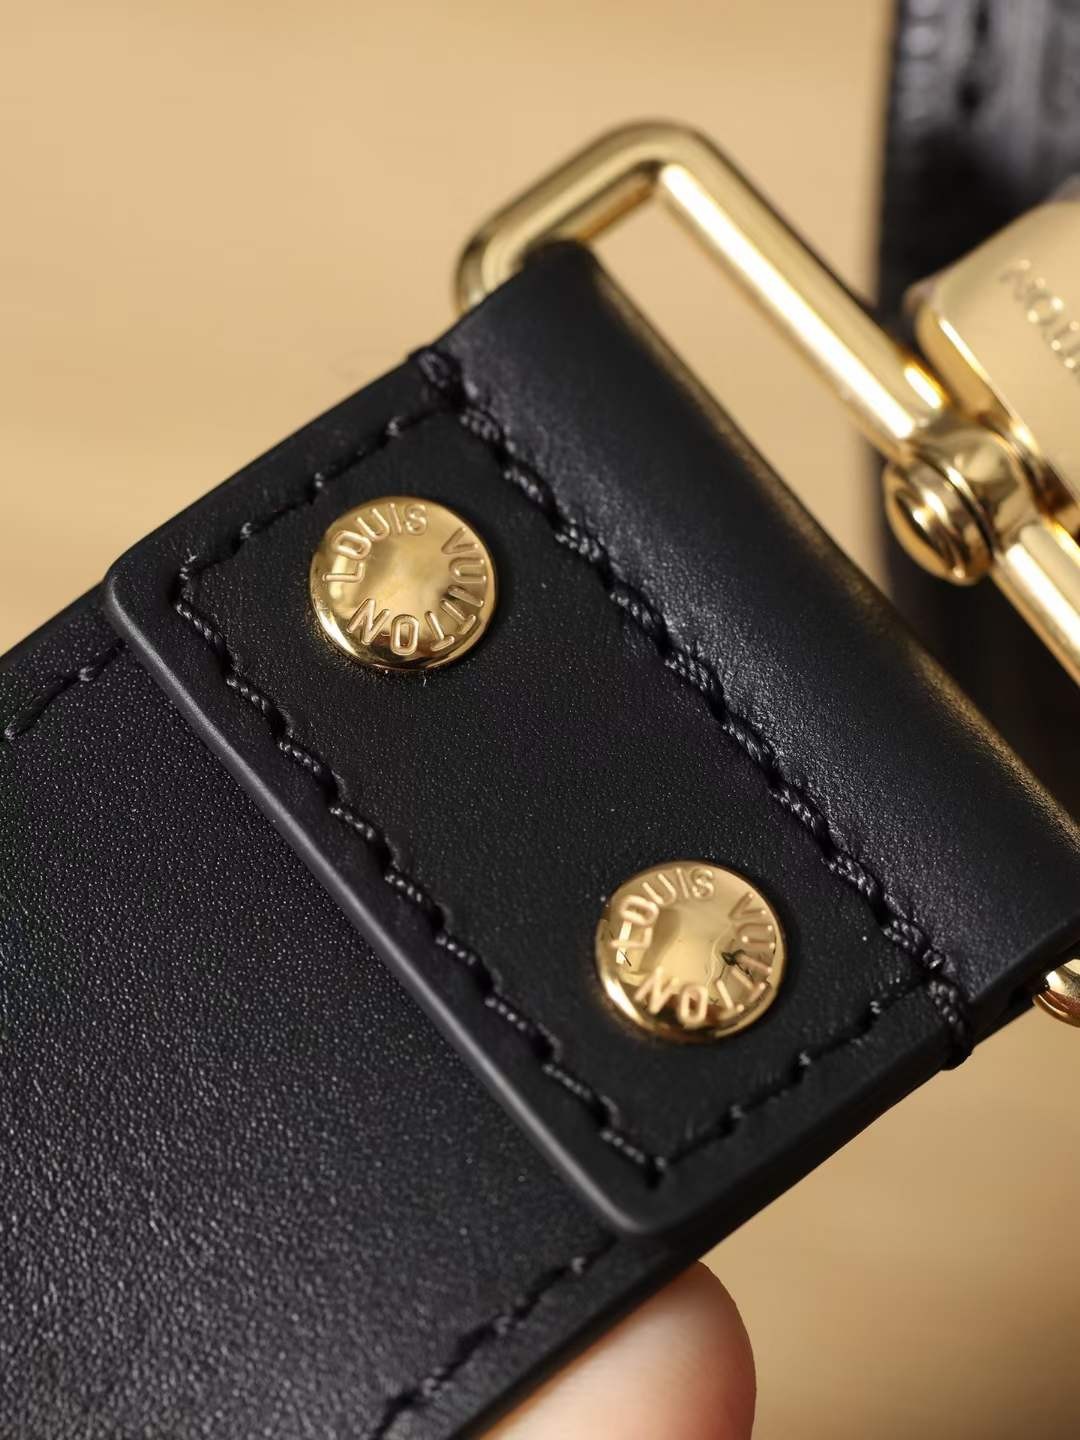 Louis Vuitton M58655 Papillon Trunk borse replica di alta qualità (aggiornato 2022)-Best Quality Fake Louis Vuitton Bag Online Store, Replica designer bag ru